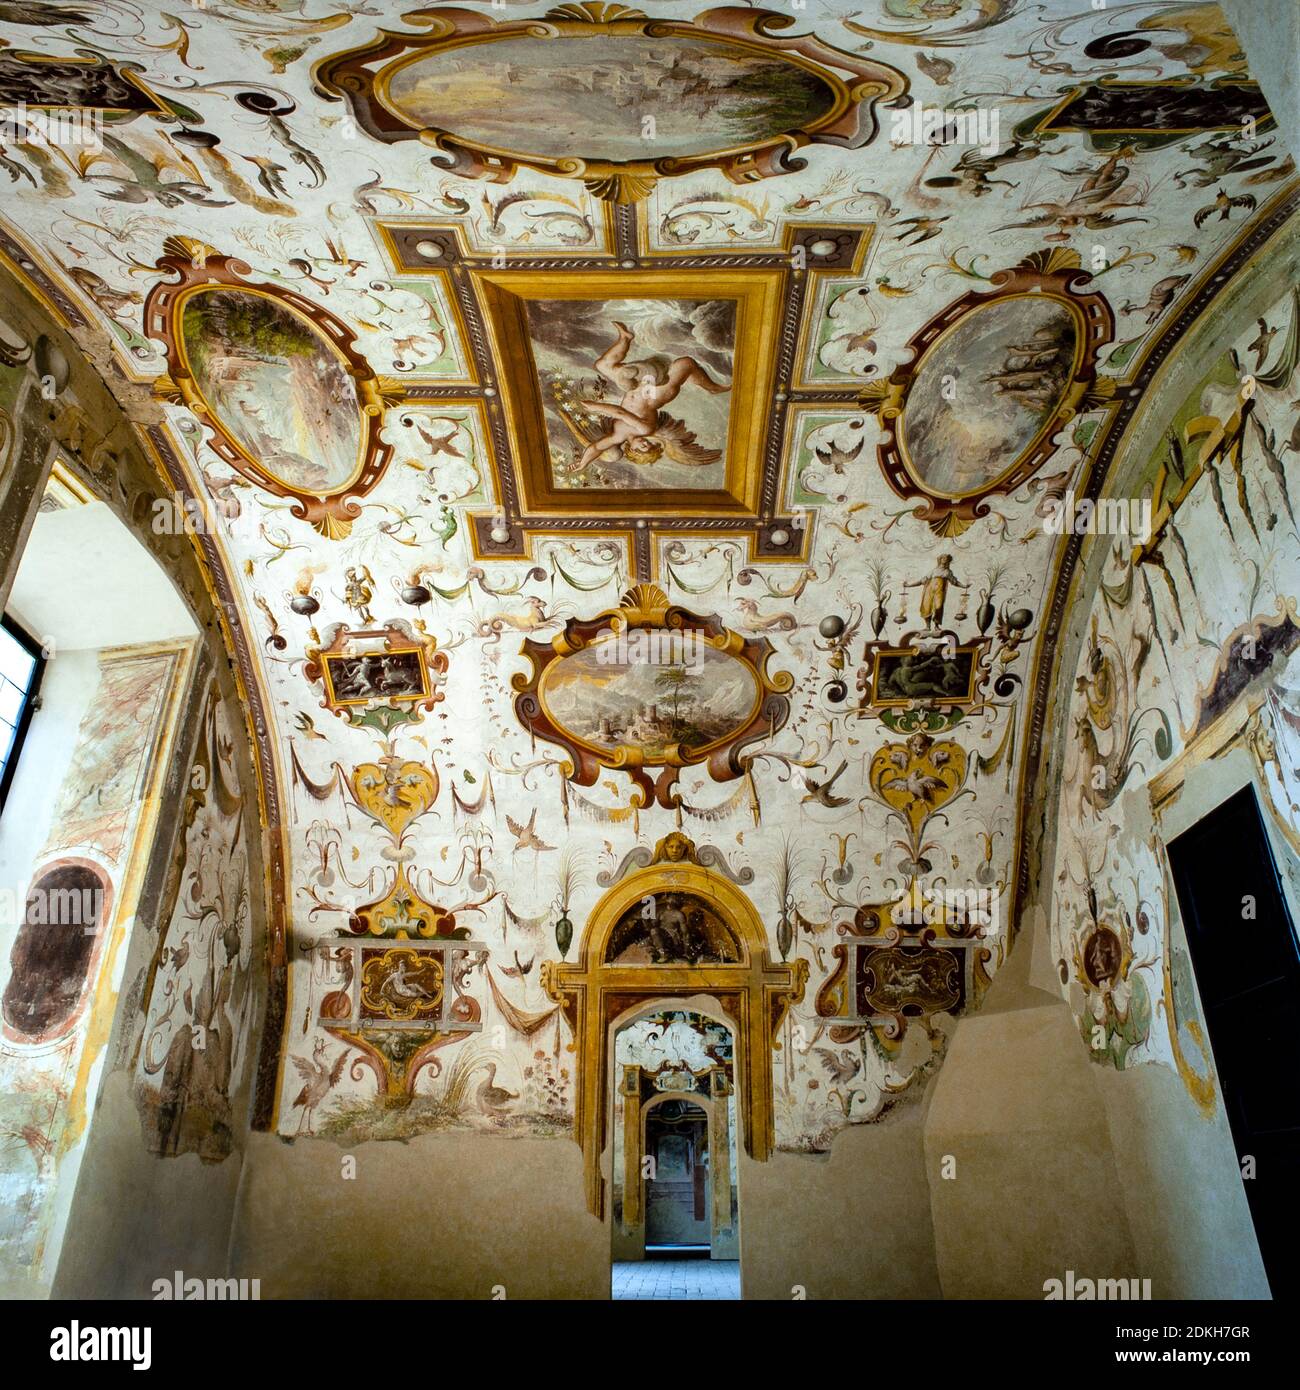 Italienische Renaissance Torrechiara Castle. Cesare Baglione 1550 - 1615. Titel des Werkes. Groteske Freskenraum Saal der Landschaften. Anfang des 17. Jahrhunderts. Stockfoto